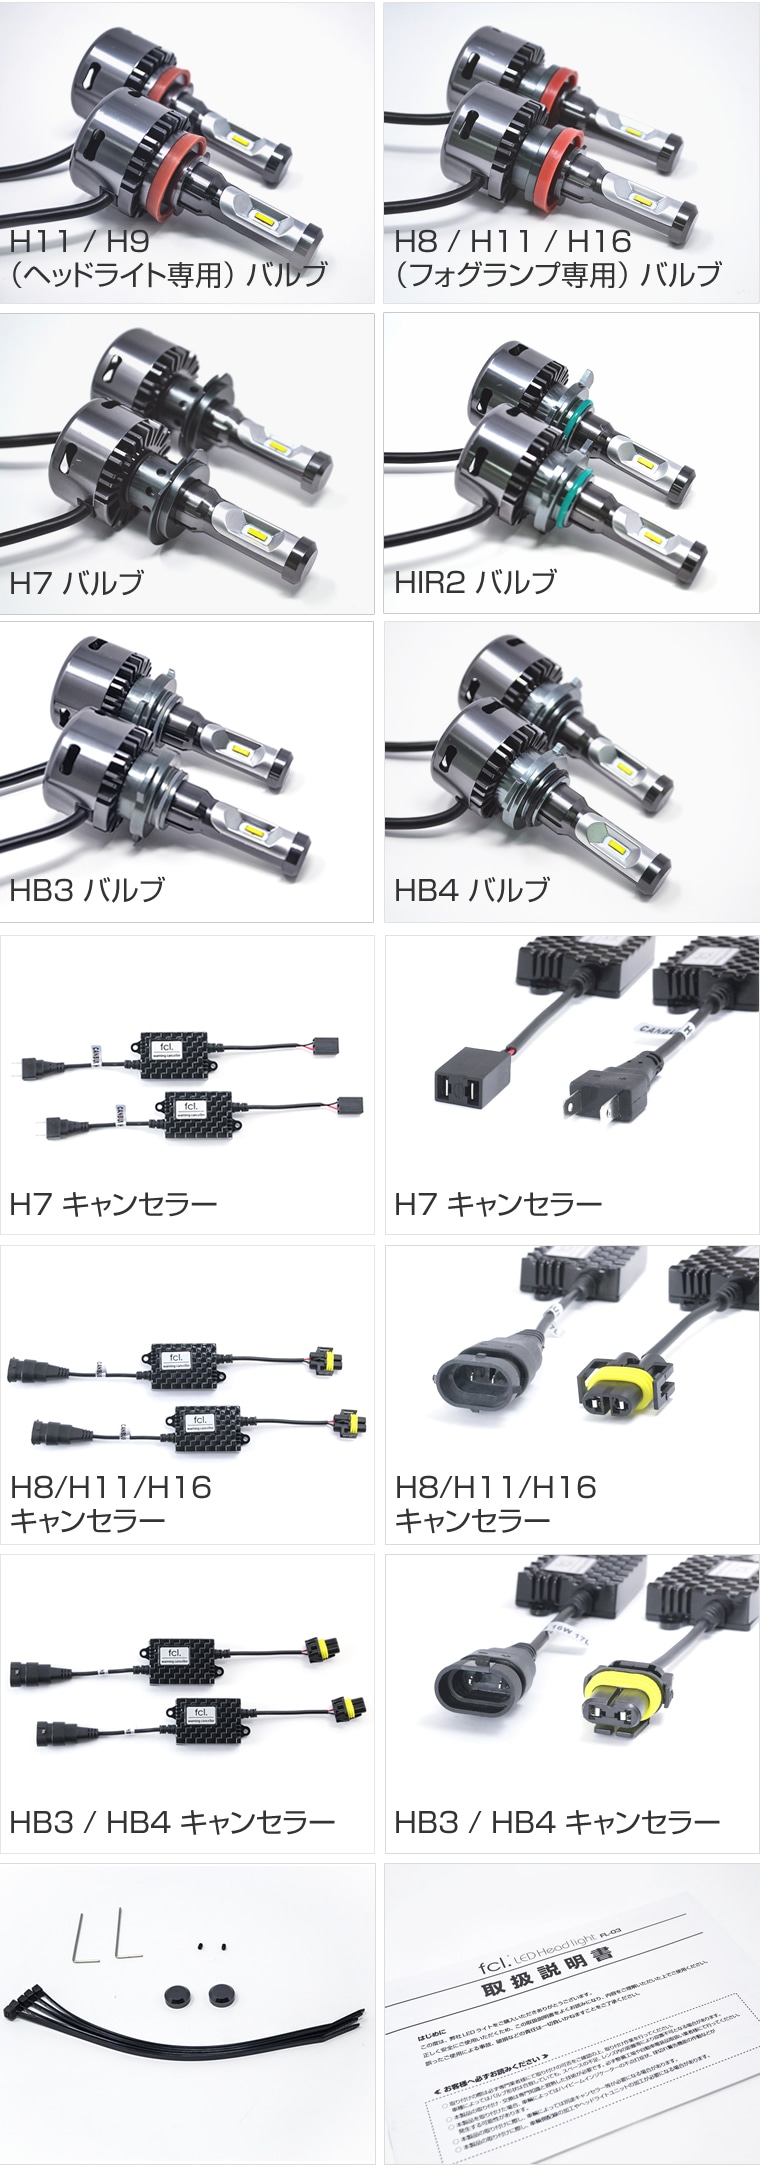 輸入車用 H7 LEDヘッドライト フォグランプ キャンセラーセット【公式通販】fcl. 車のLED専門店